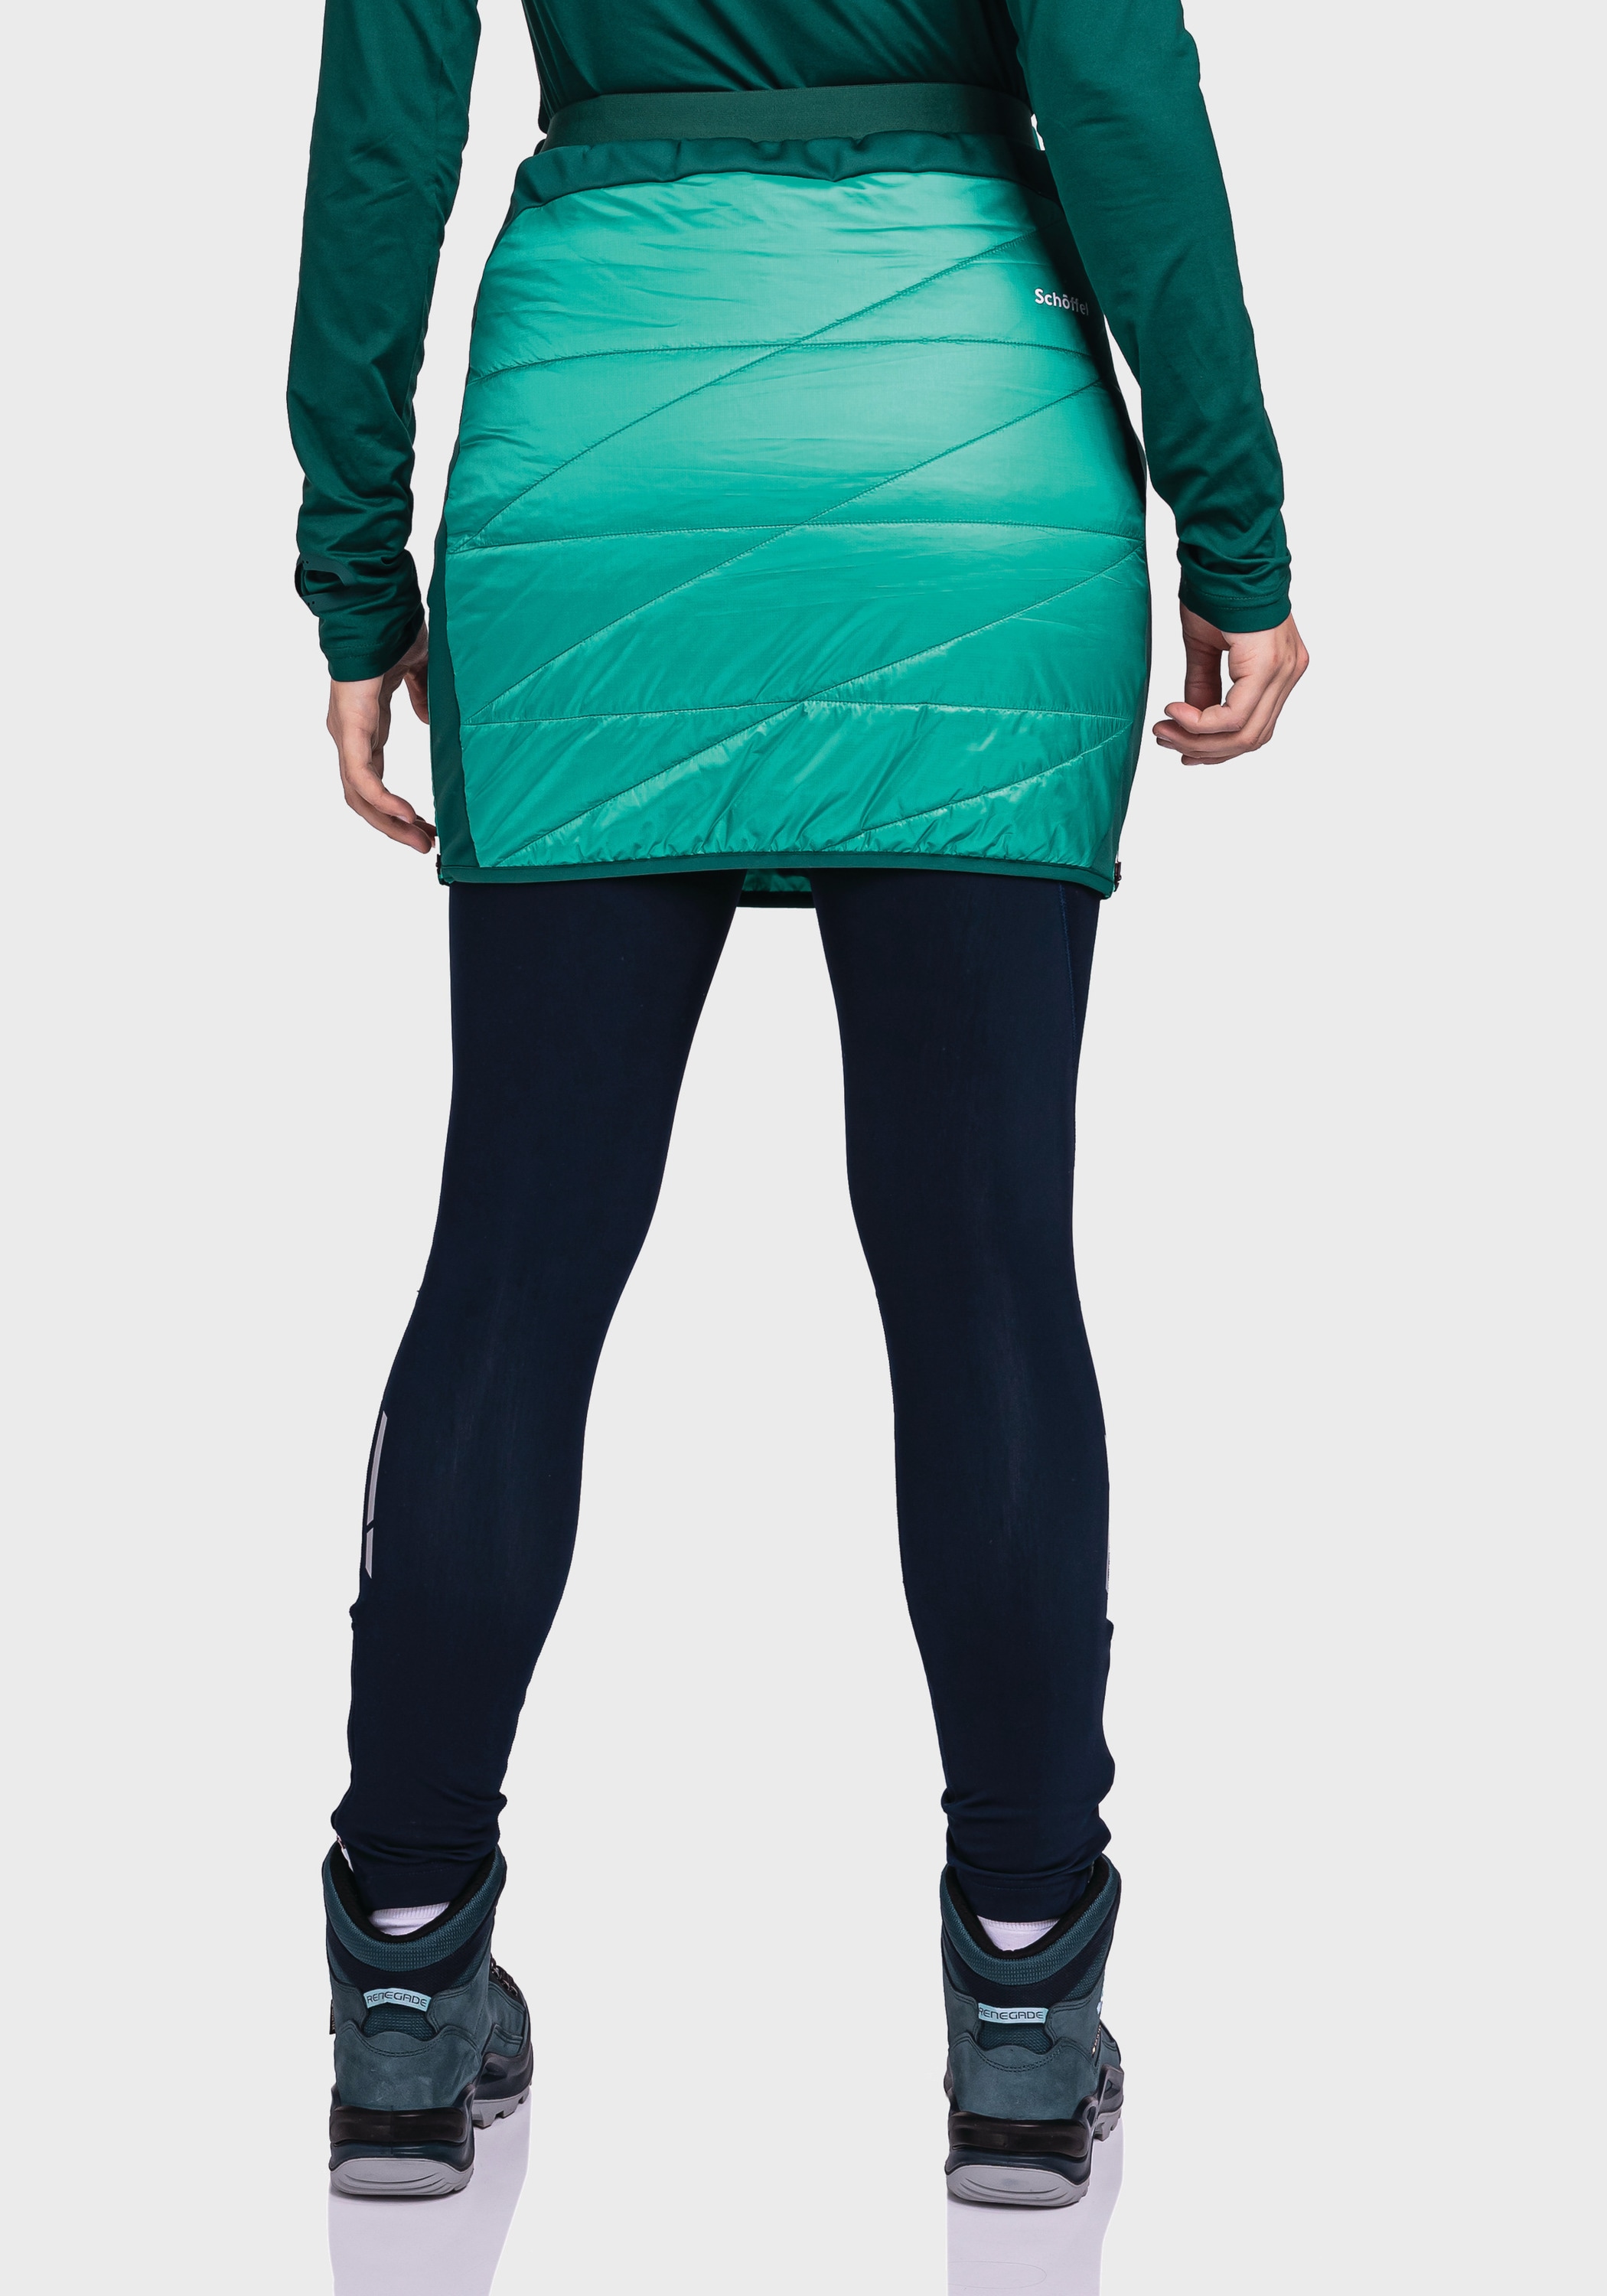 Sweatrock kaufen »Thermo Skirt L« bei Schöffel OTTO Stams